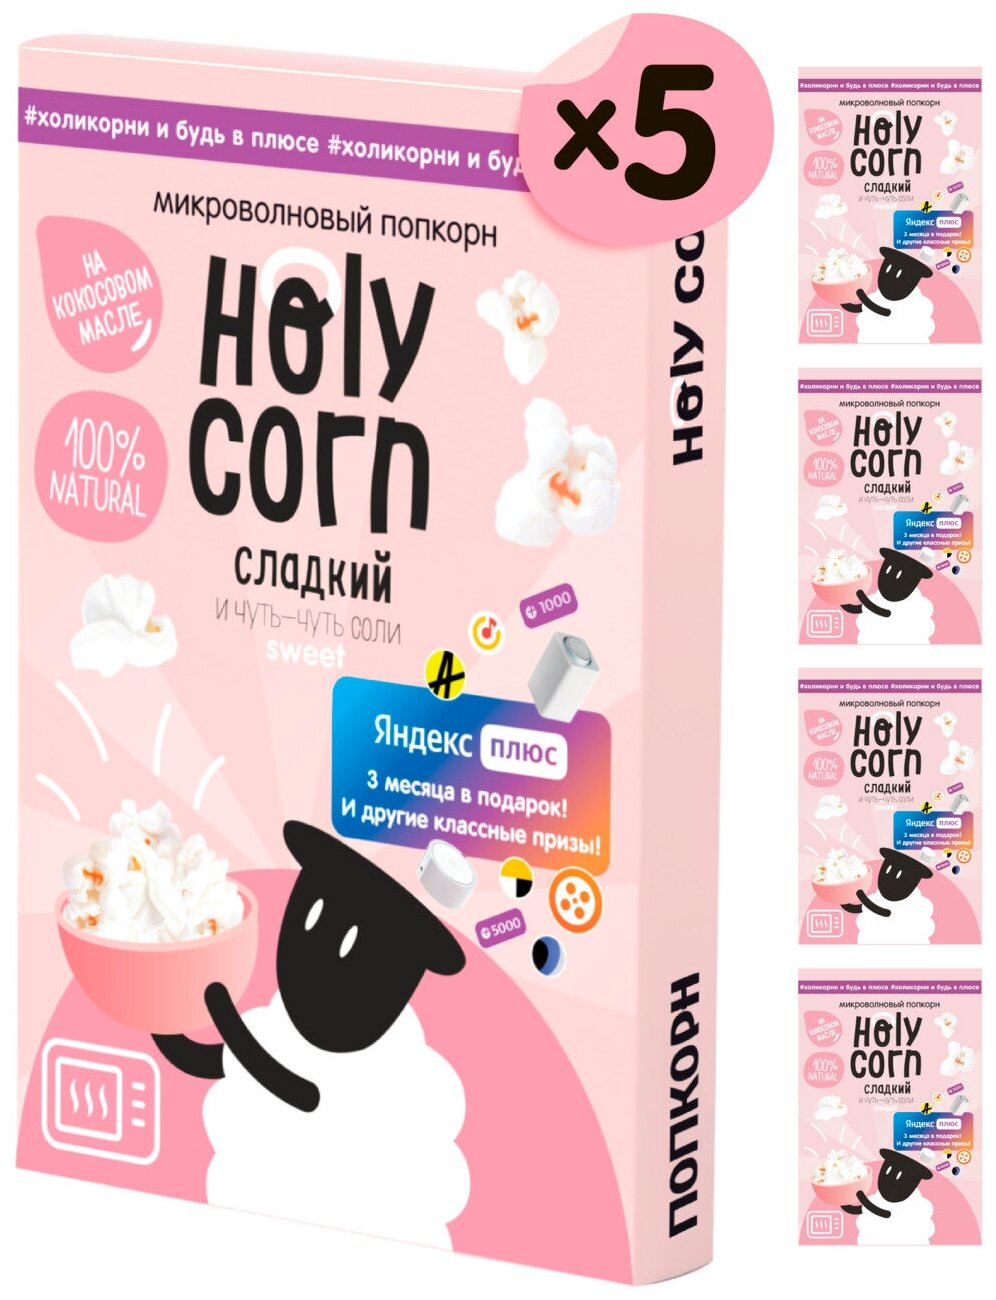 Попкорн микроволновый СВЧ Holy Corn "Сладкий" 70 г х 5 шт